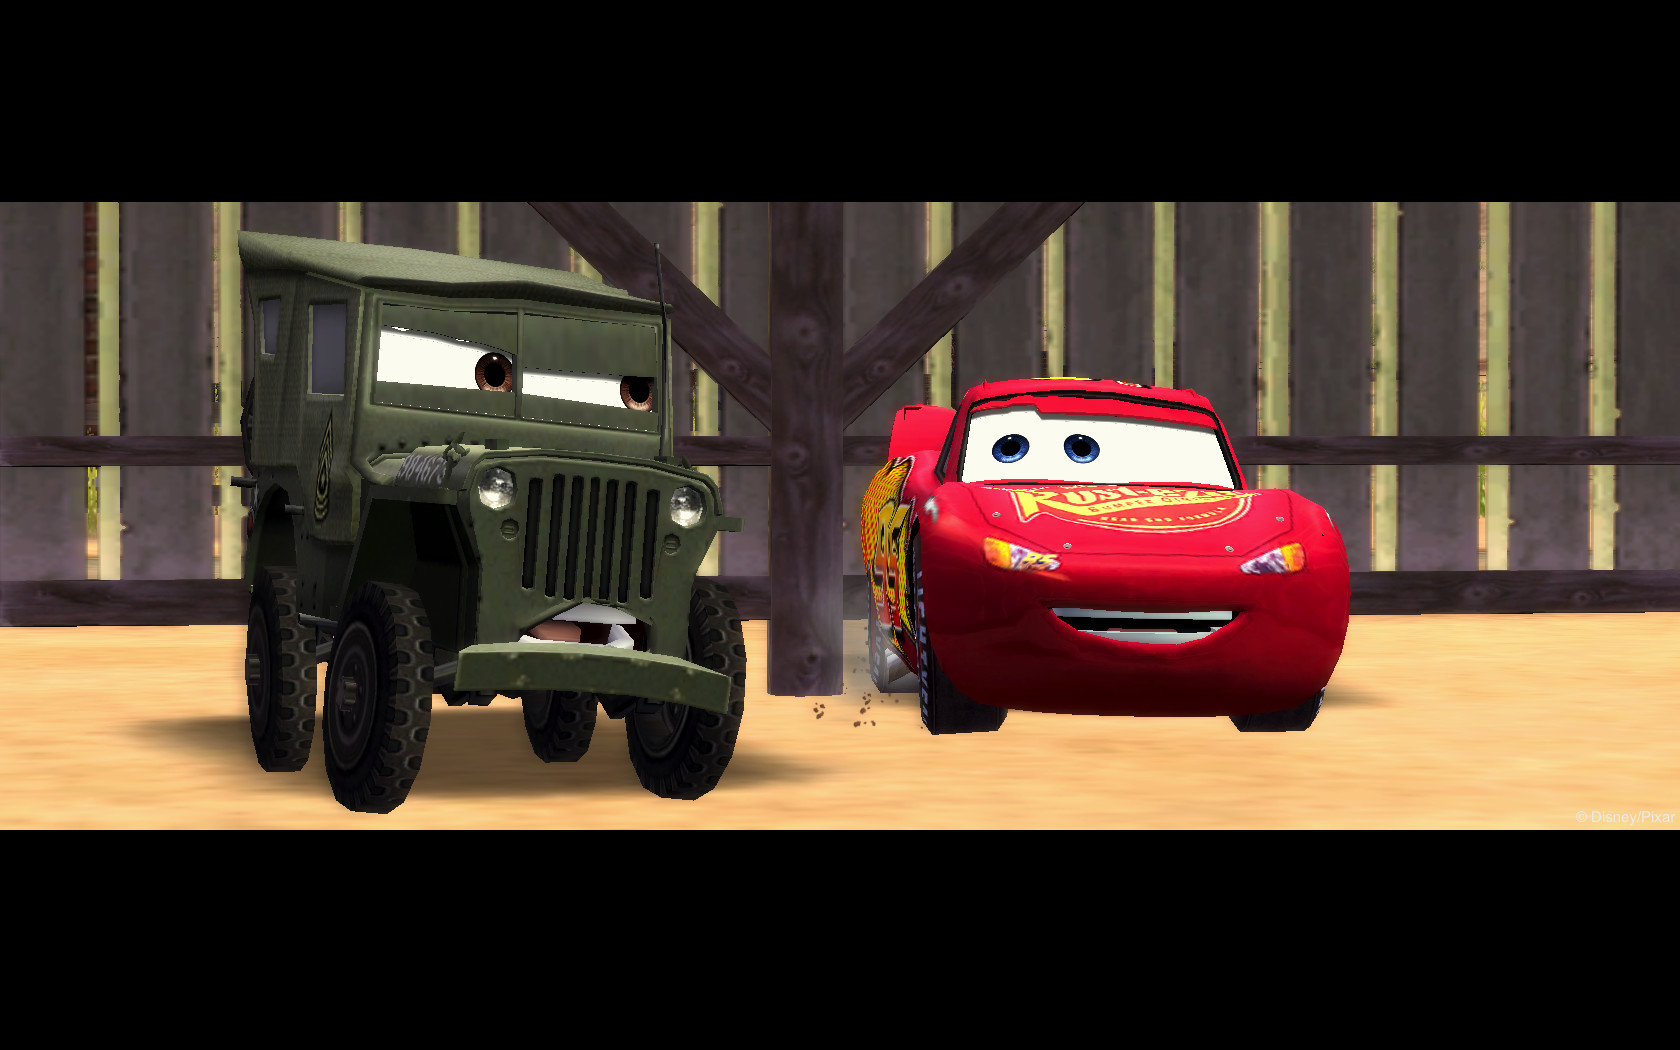 disney pixar cars 2 game download free